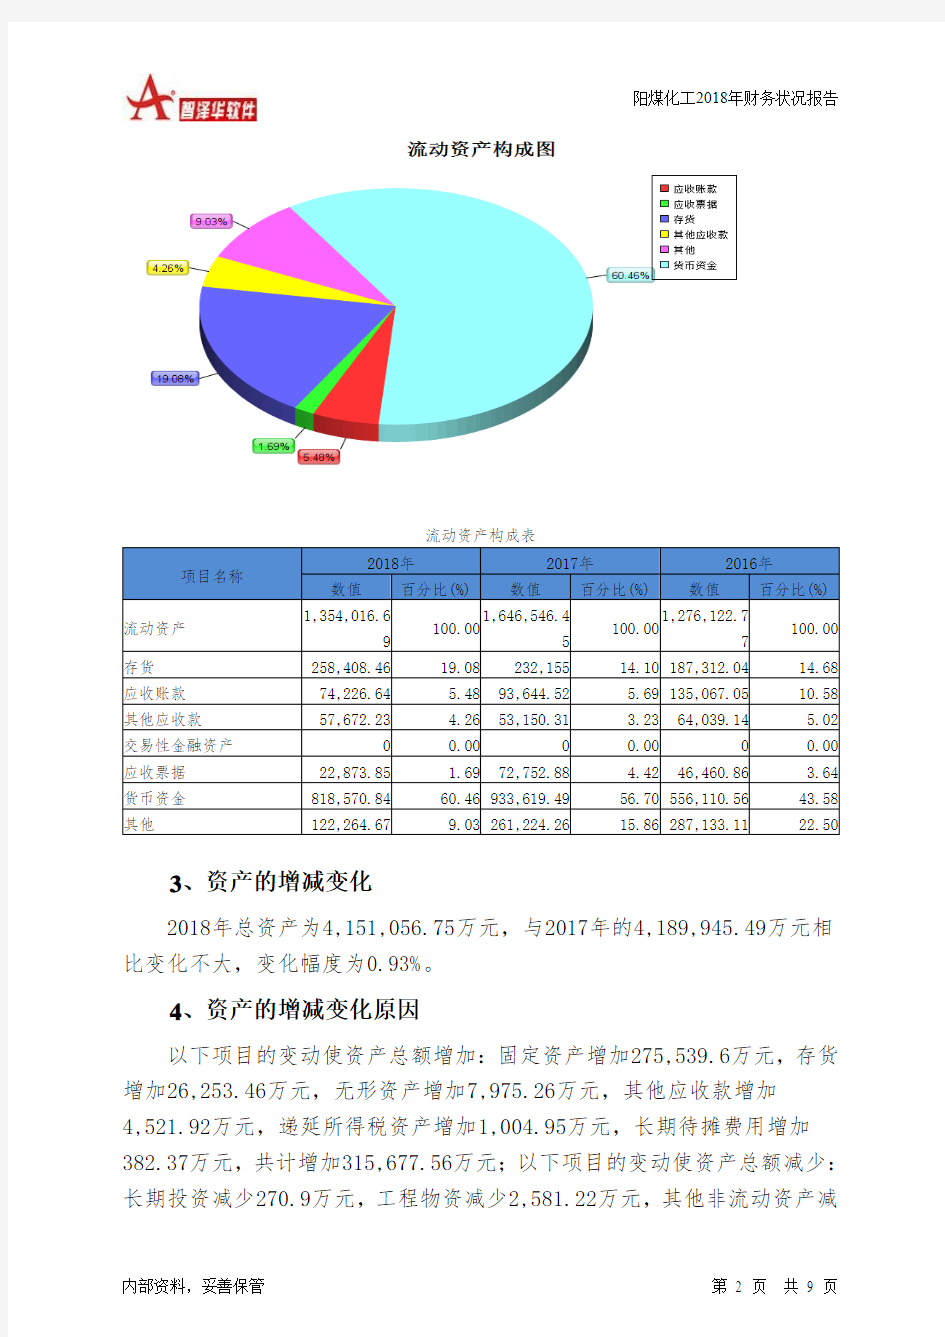 阳煤化工2018年财务状况报告-智泽华